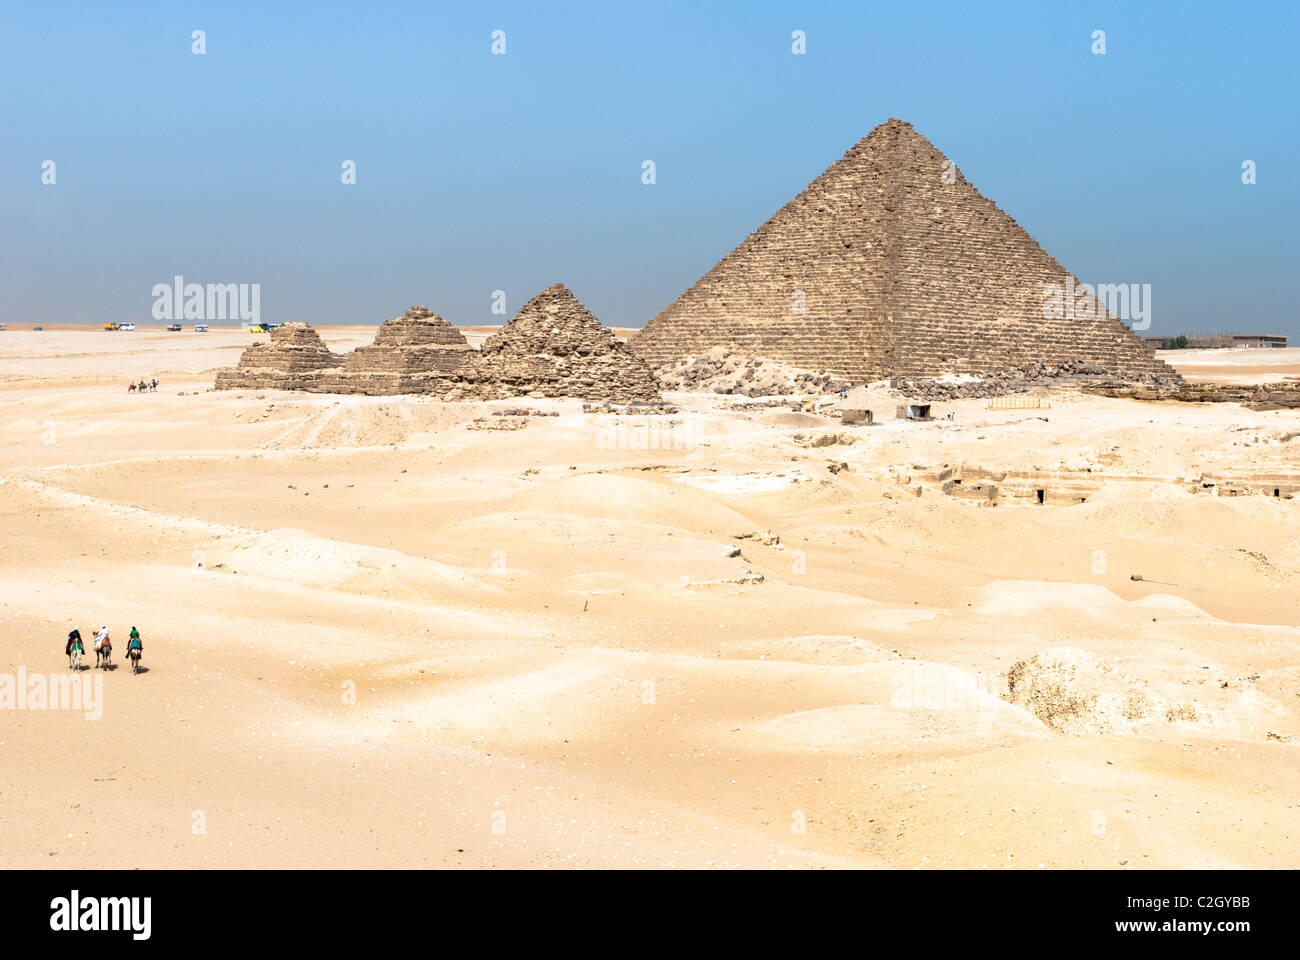 Pyramide de Gizeh, nécropole Menkaourê - Basse Egypte Banque D'Images